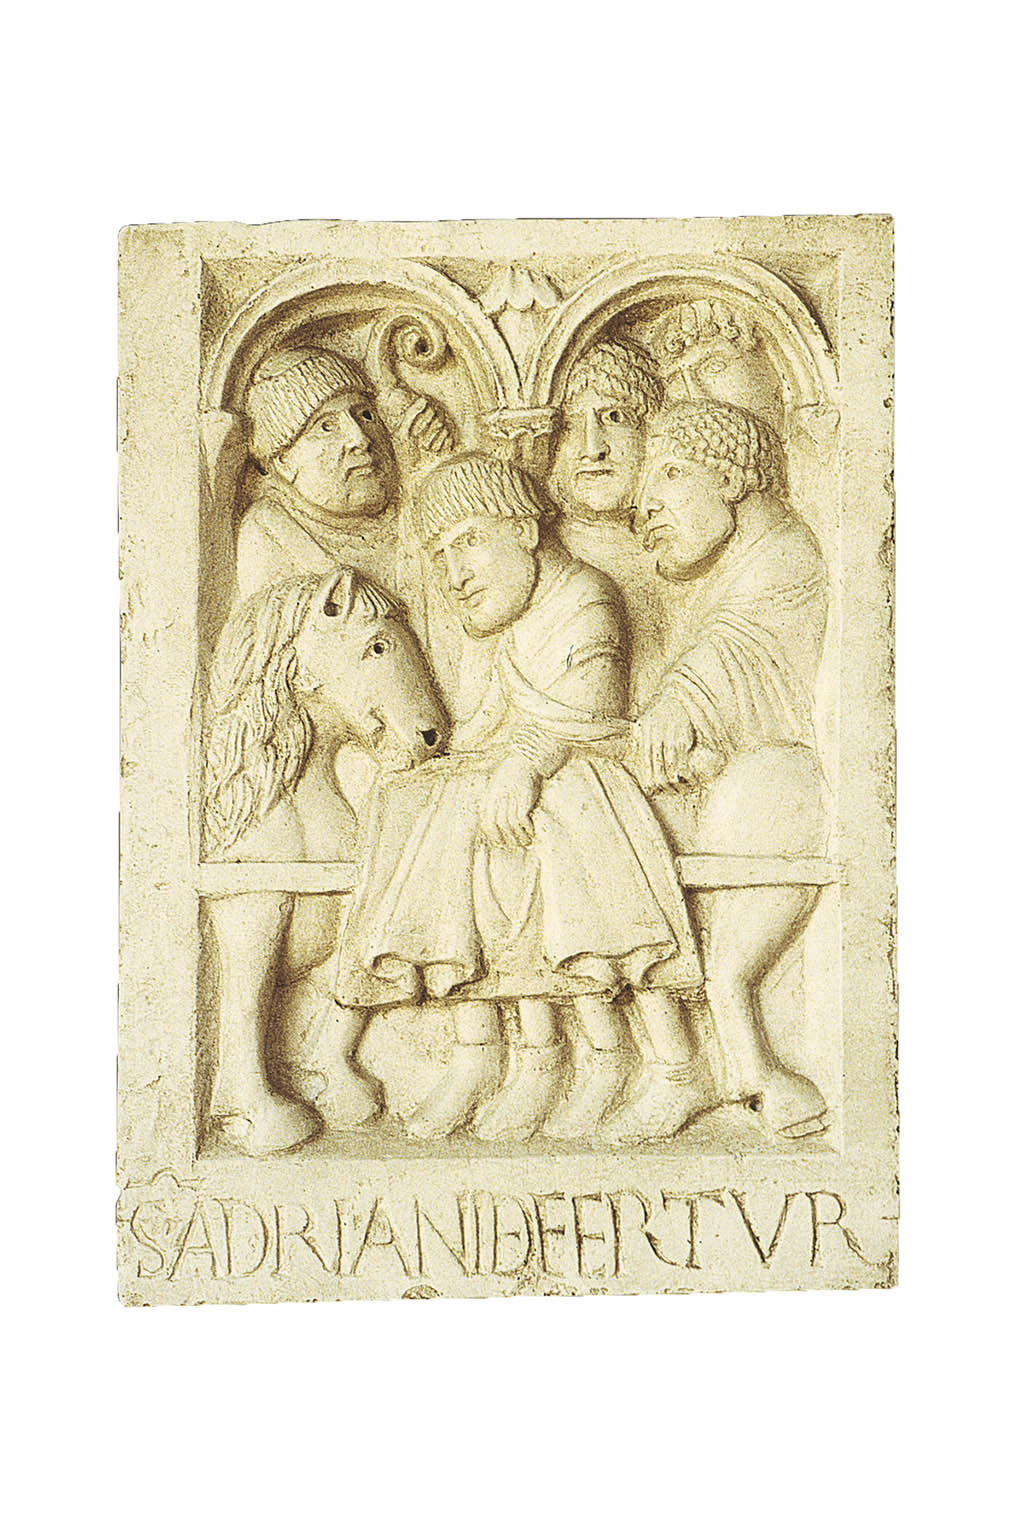 I monaci traslano la salma di papa Adriano III verso l’abbazia, formella dal portale dell’Abbazia di Nonantola